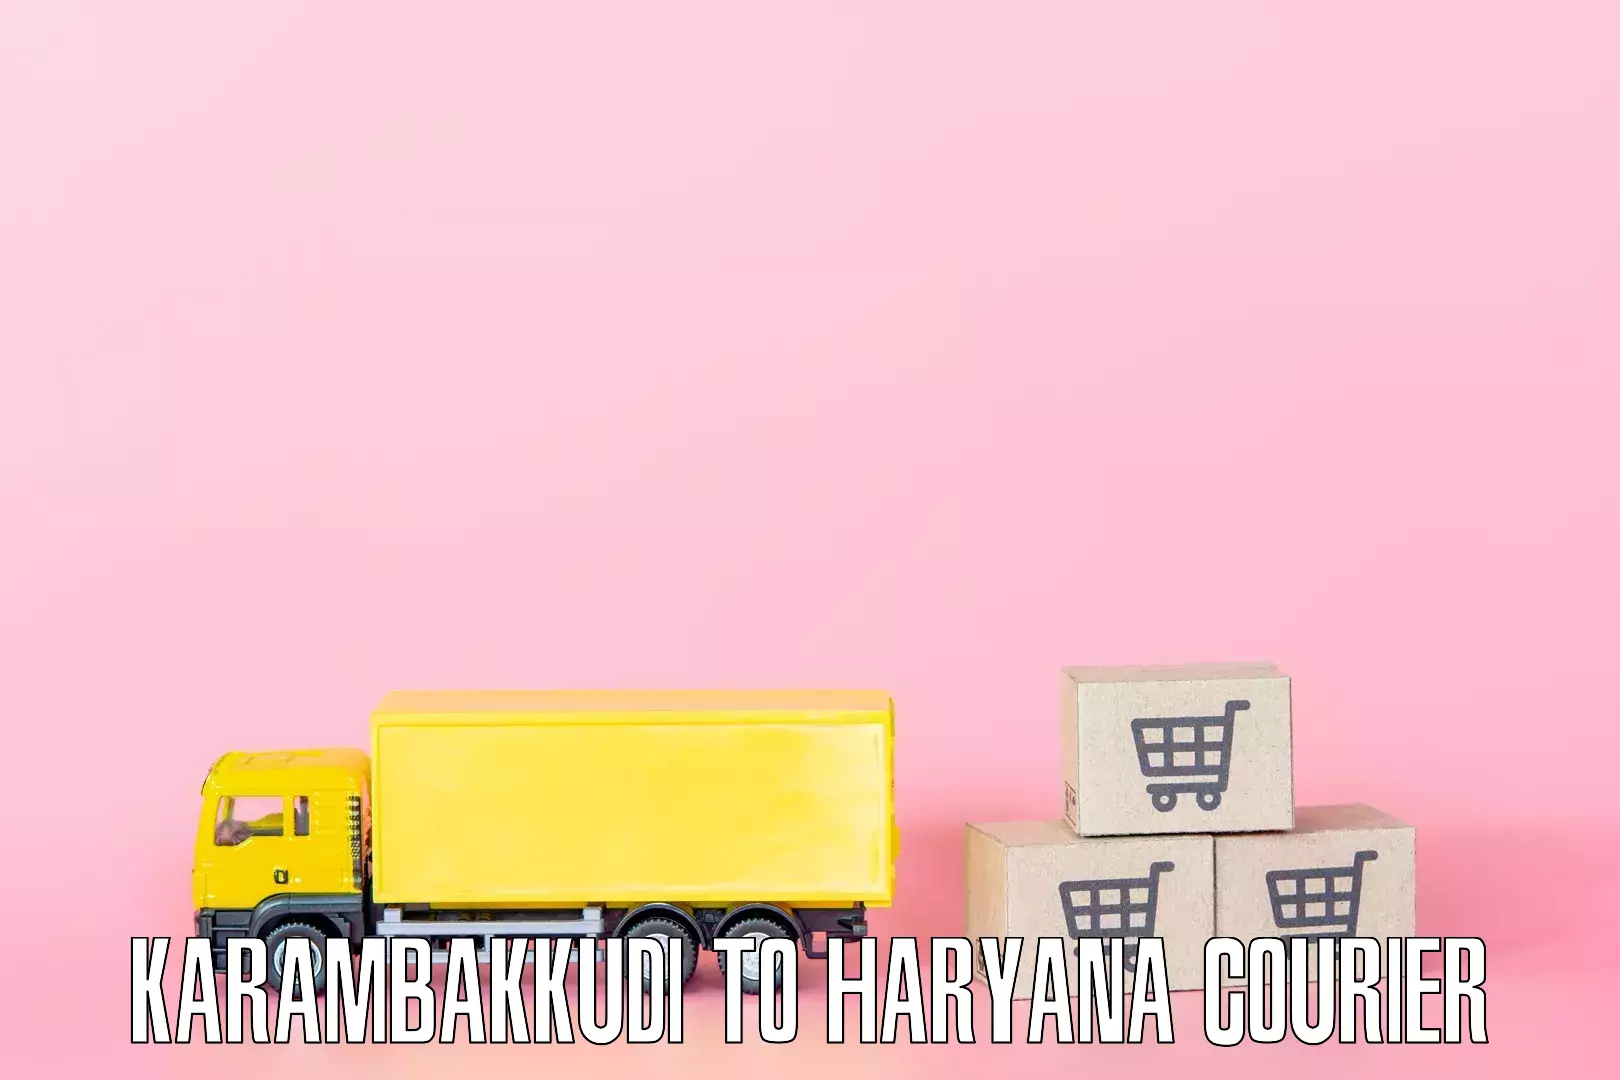 Furniture transport experts Karambakkudi to Haryana